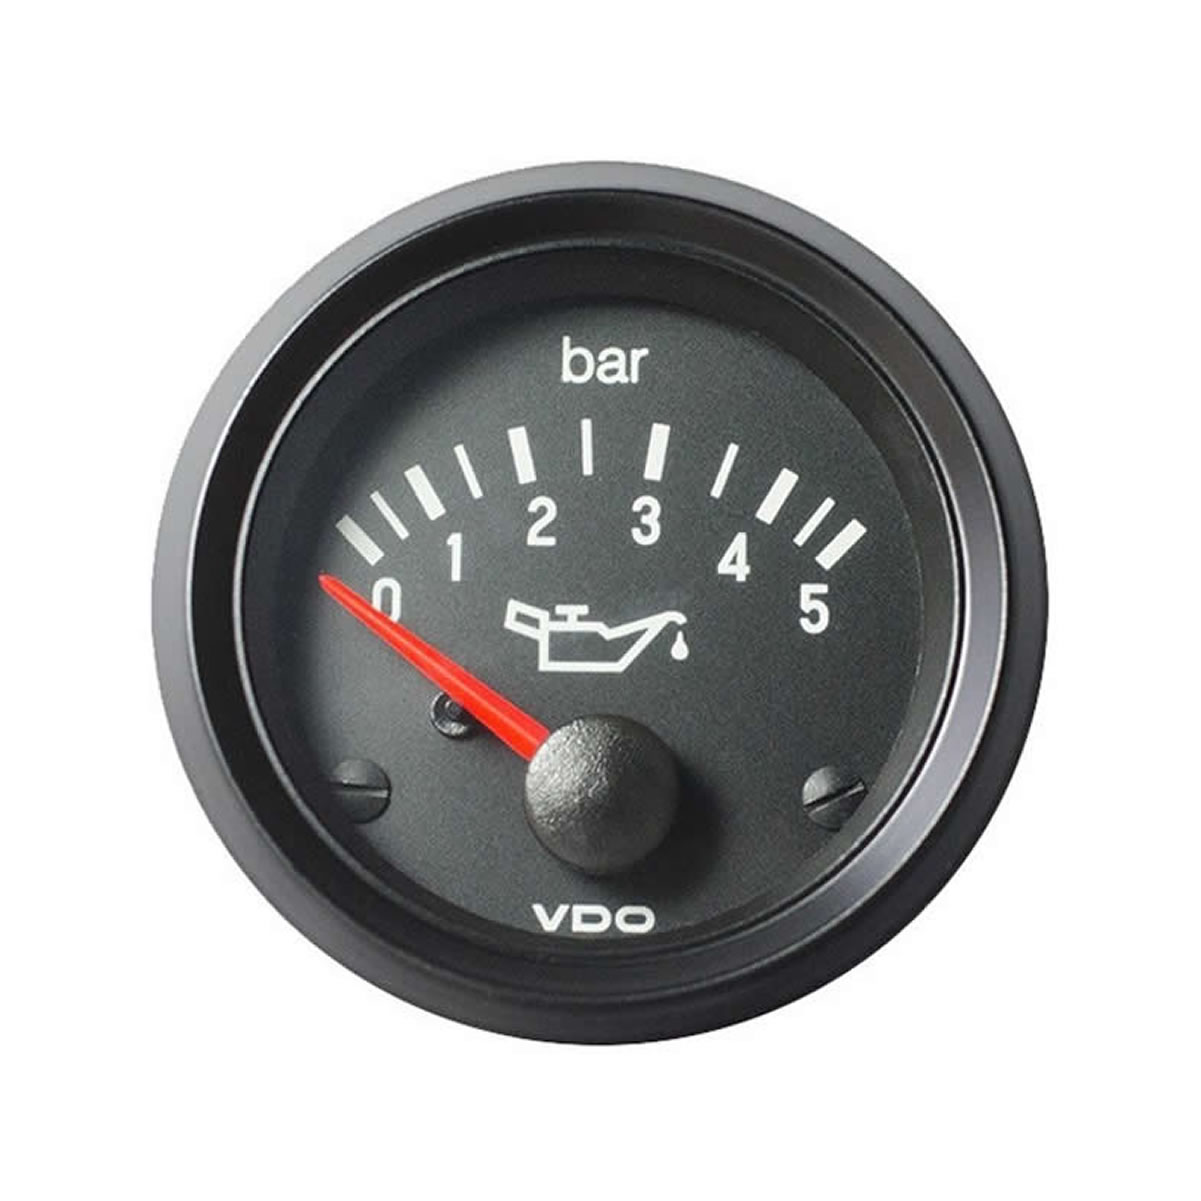 VDO Electric VDO Pressure Gauge 5Bar